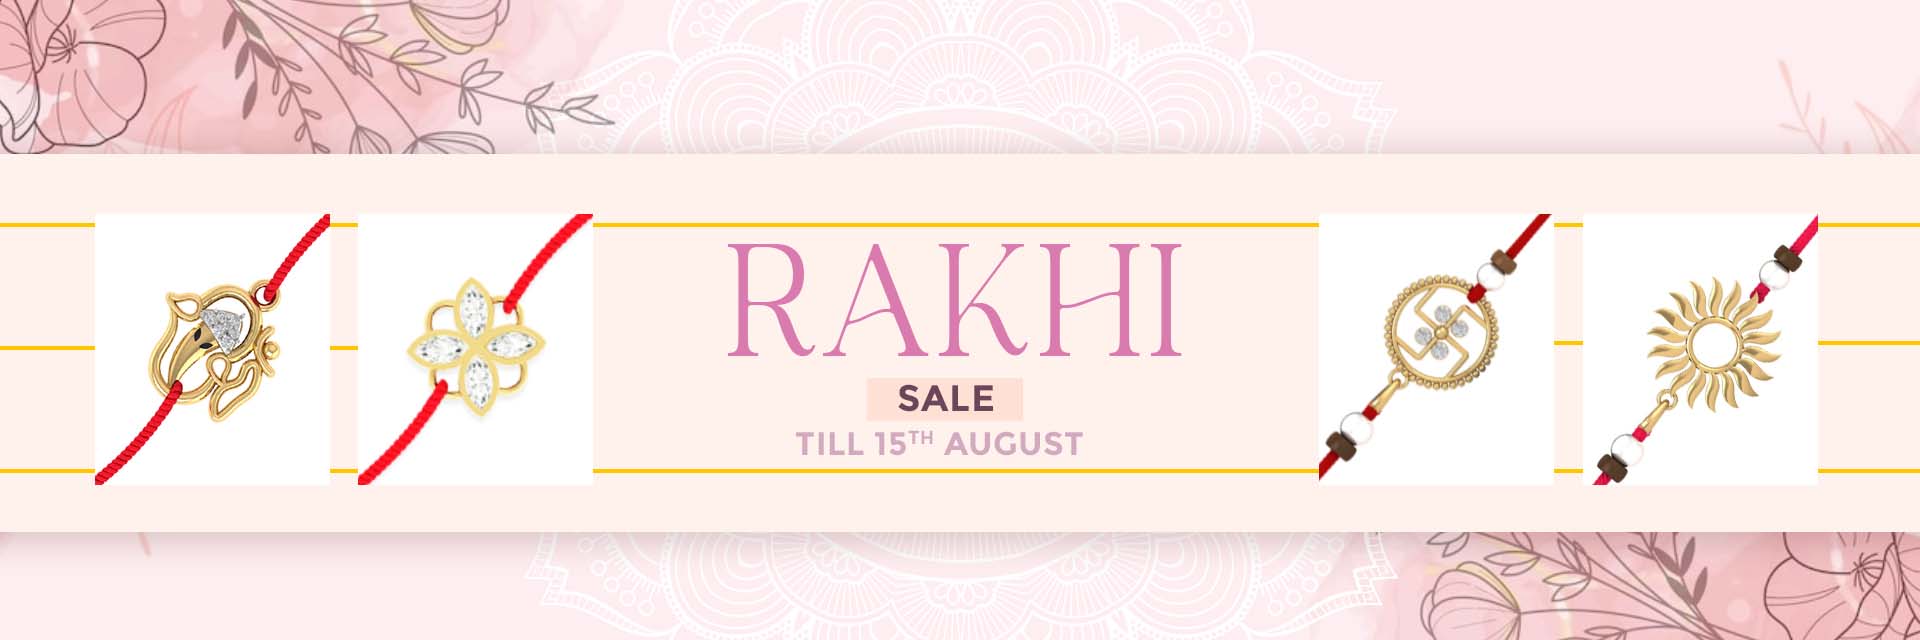 buy online gold rakhi